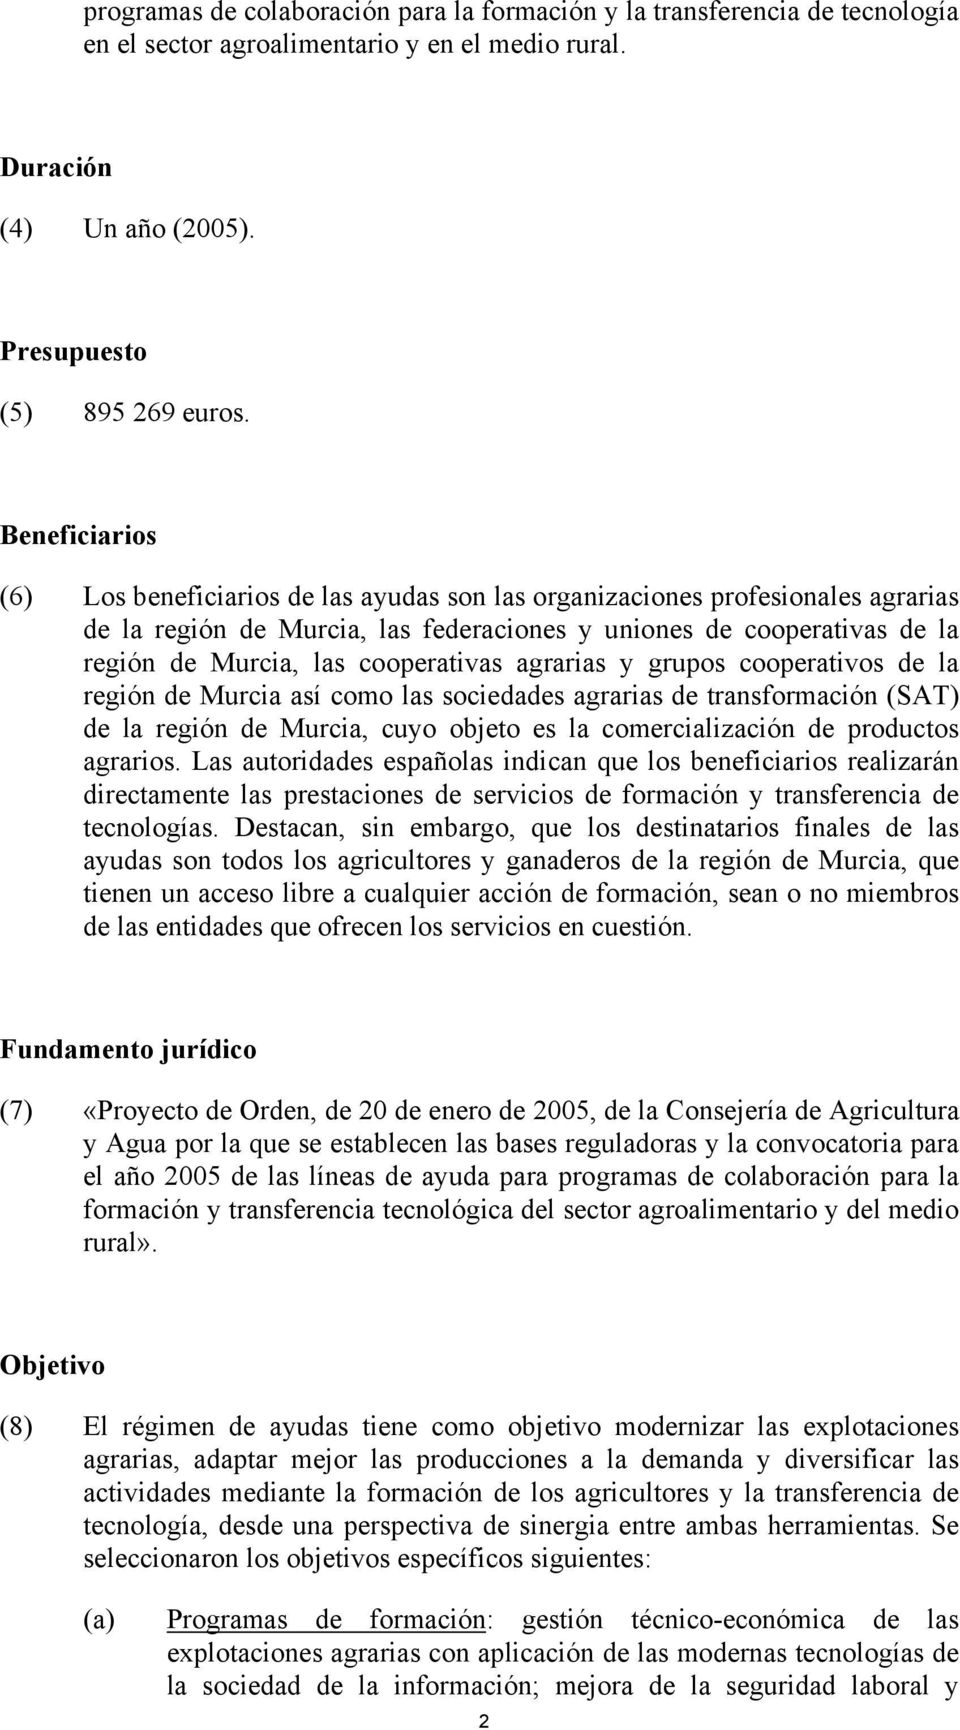 cooperativas agrarias y grupos cooperativos de la región de Murcia así como las sociedades agrarias de transformación (SAT) de la región de Murcia, cuyo objeto es la comercialización de productos